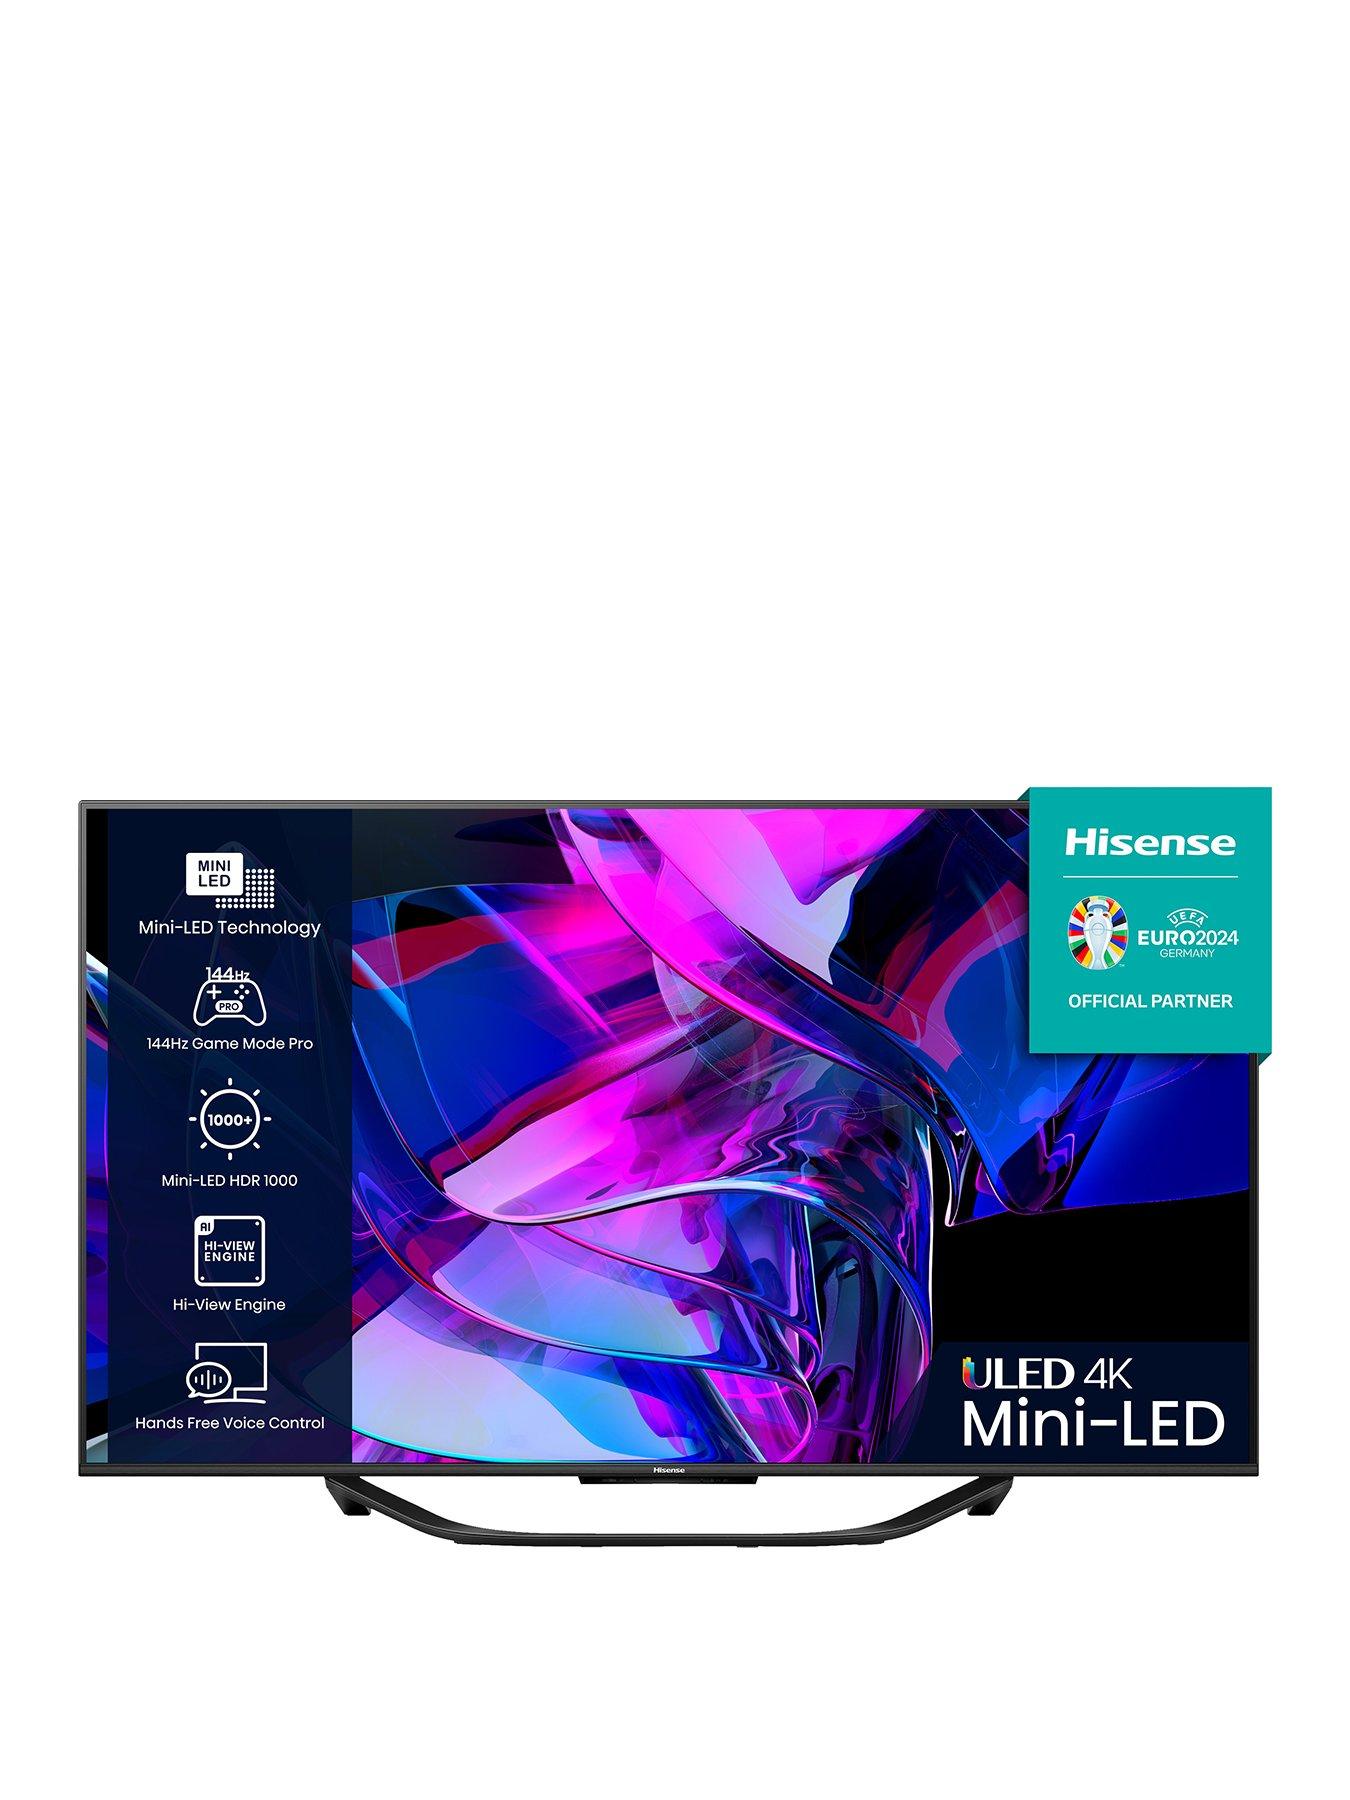 4K Mini-LED TV U7K Series